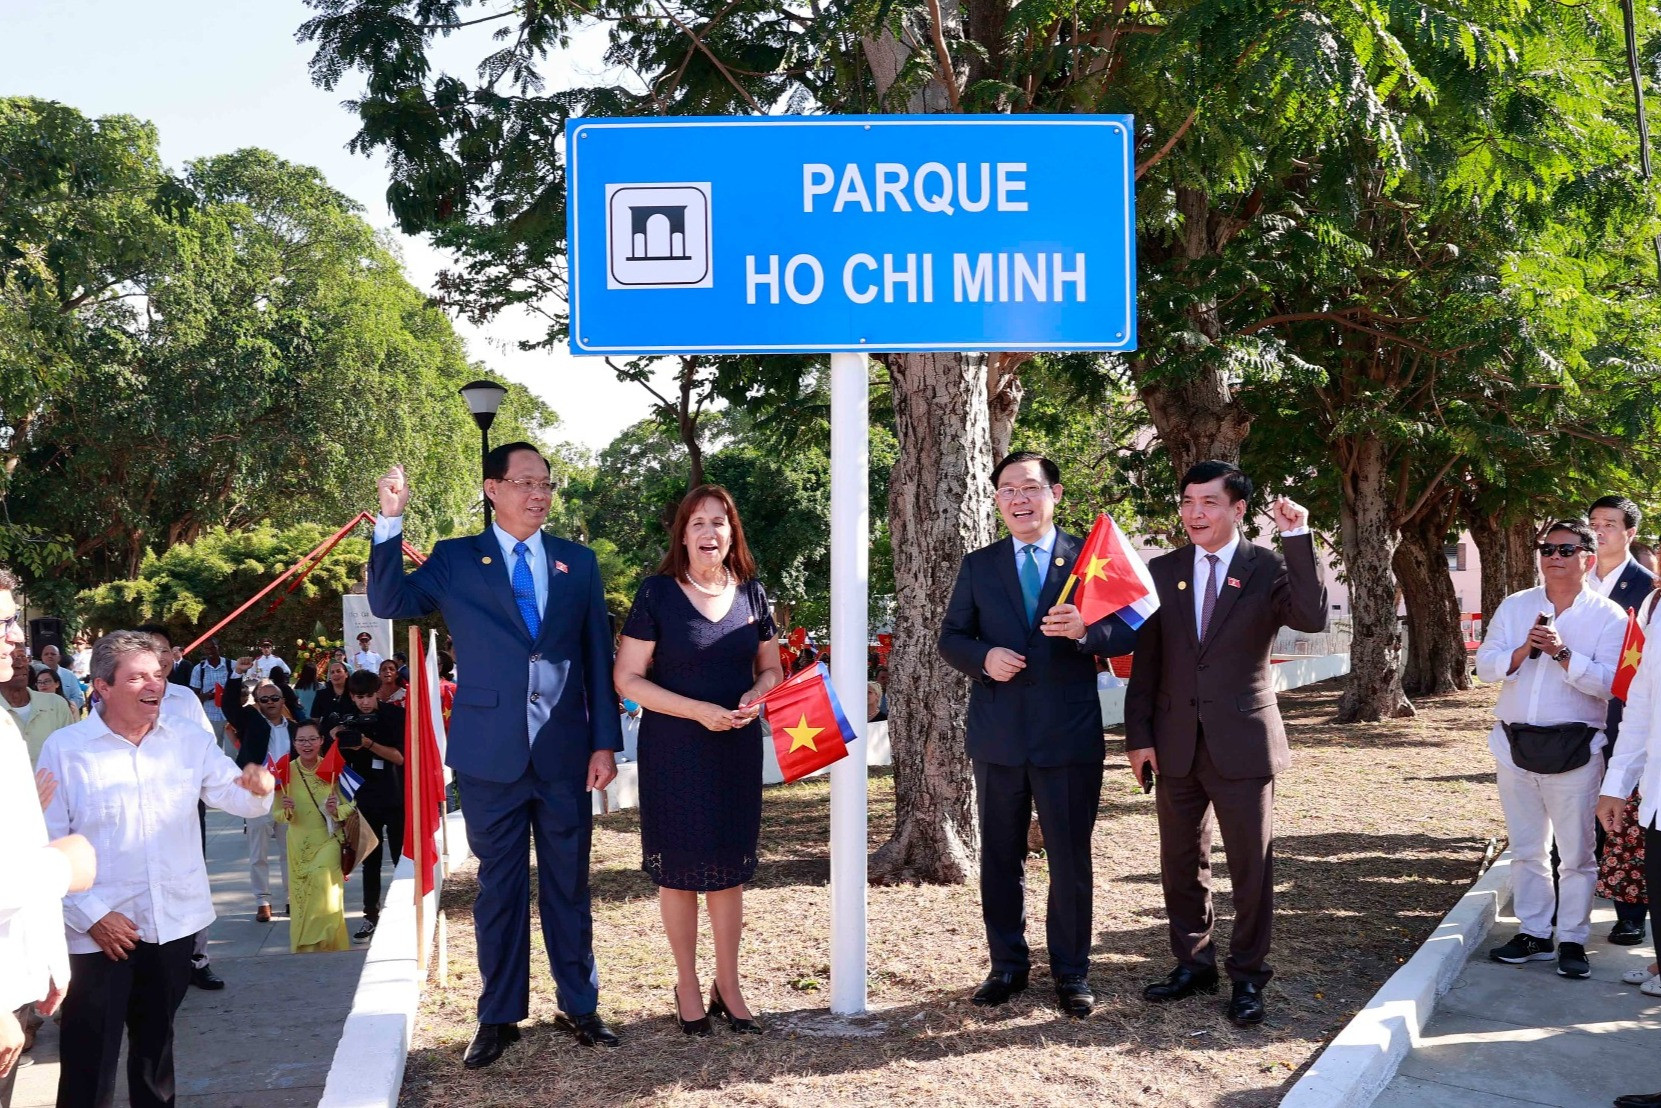 Chủ tịch Quốc hội xúc động khi Cuba có công viên mang tên Chủ tịch Hồ Chí Minh